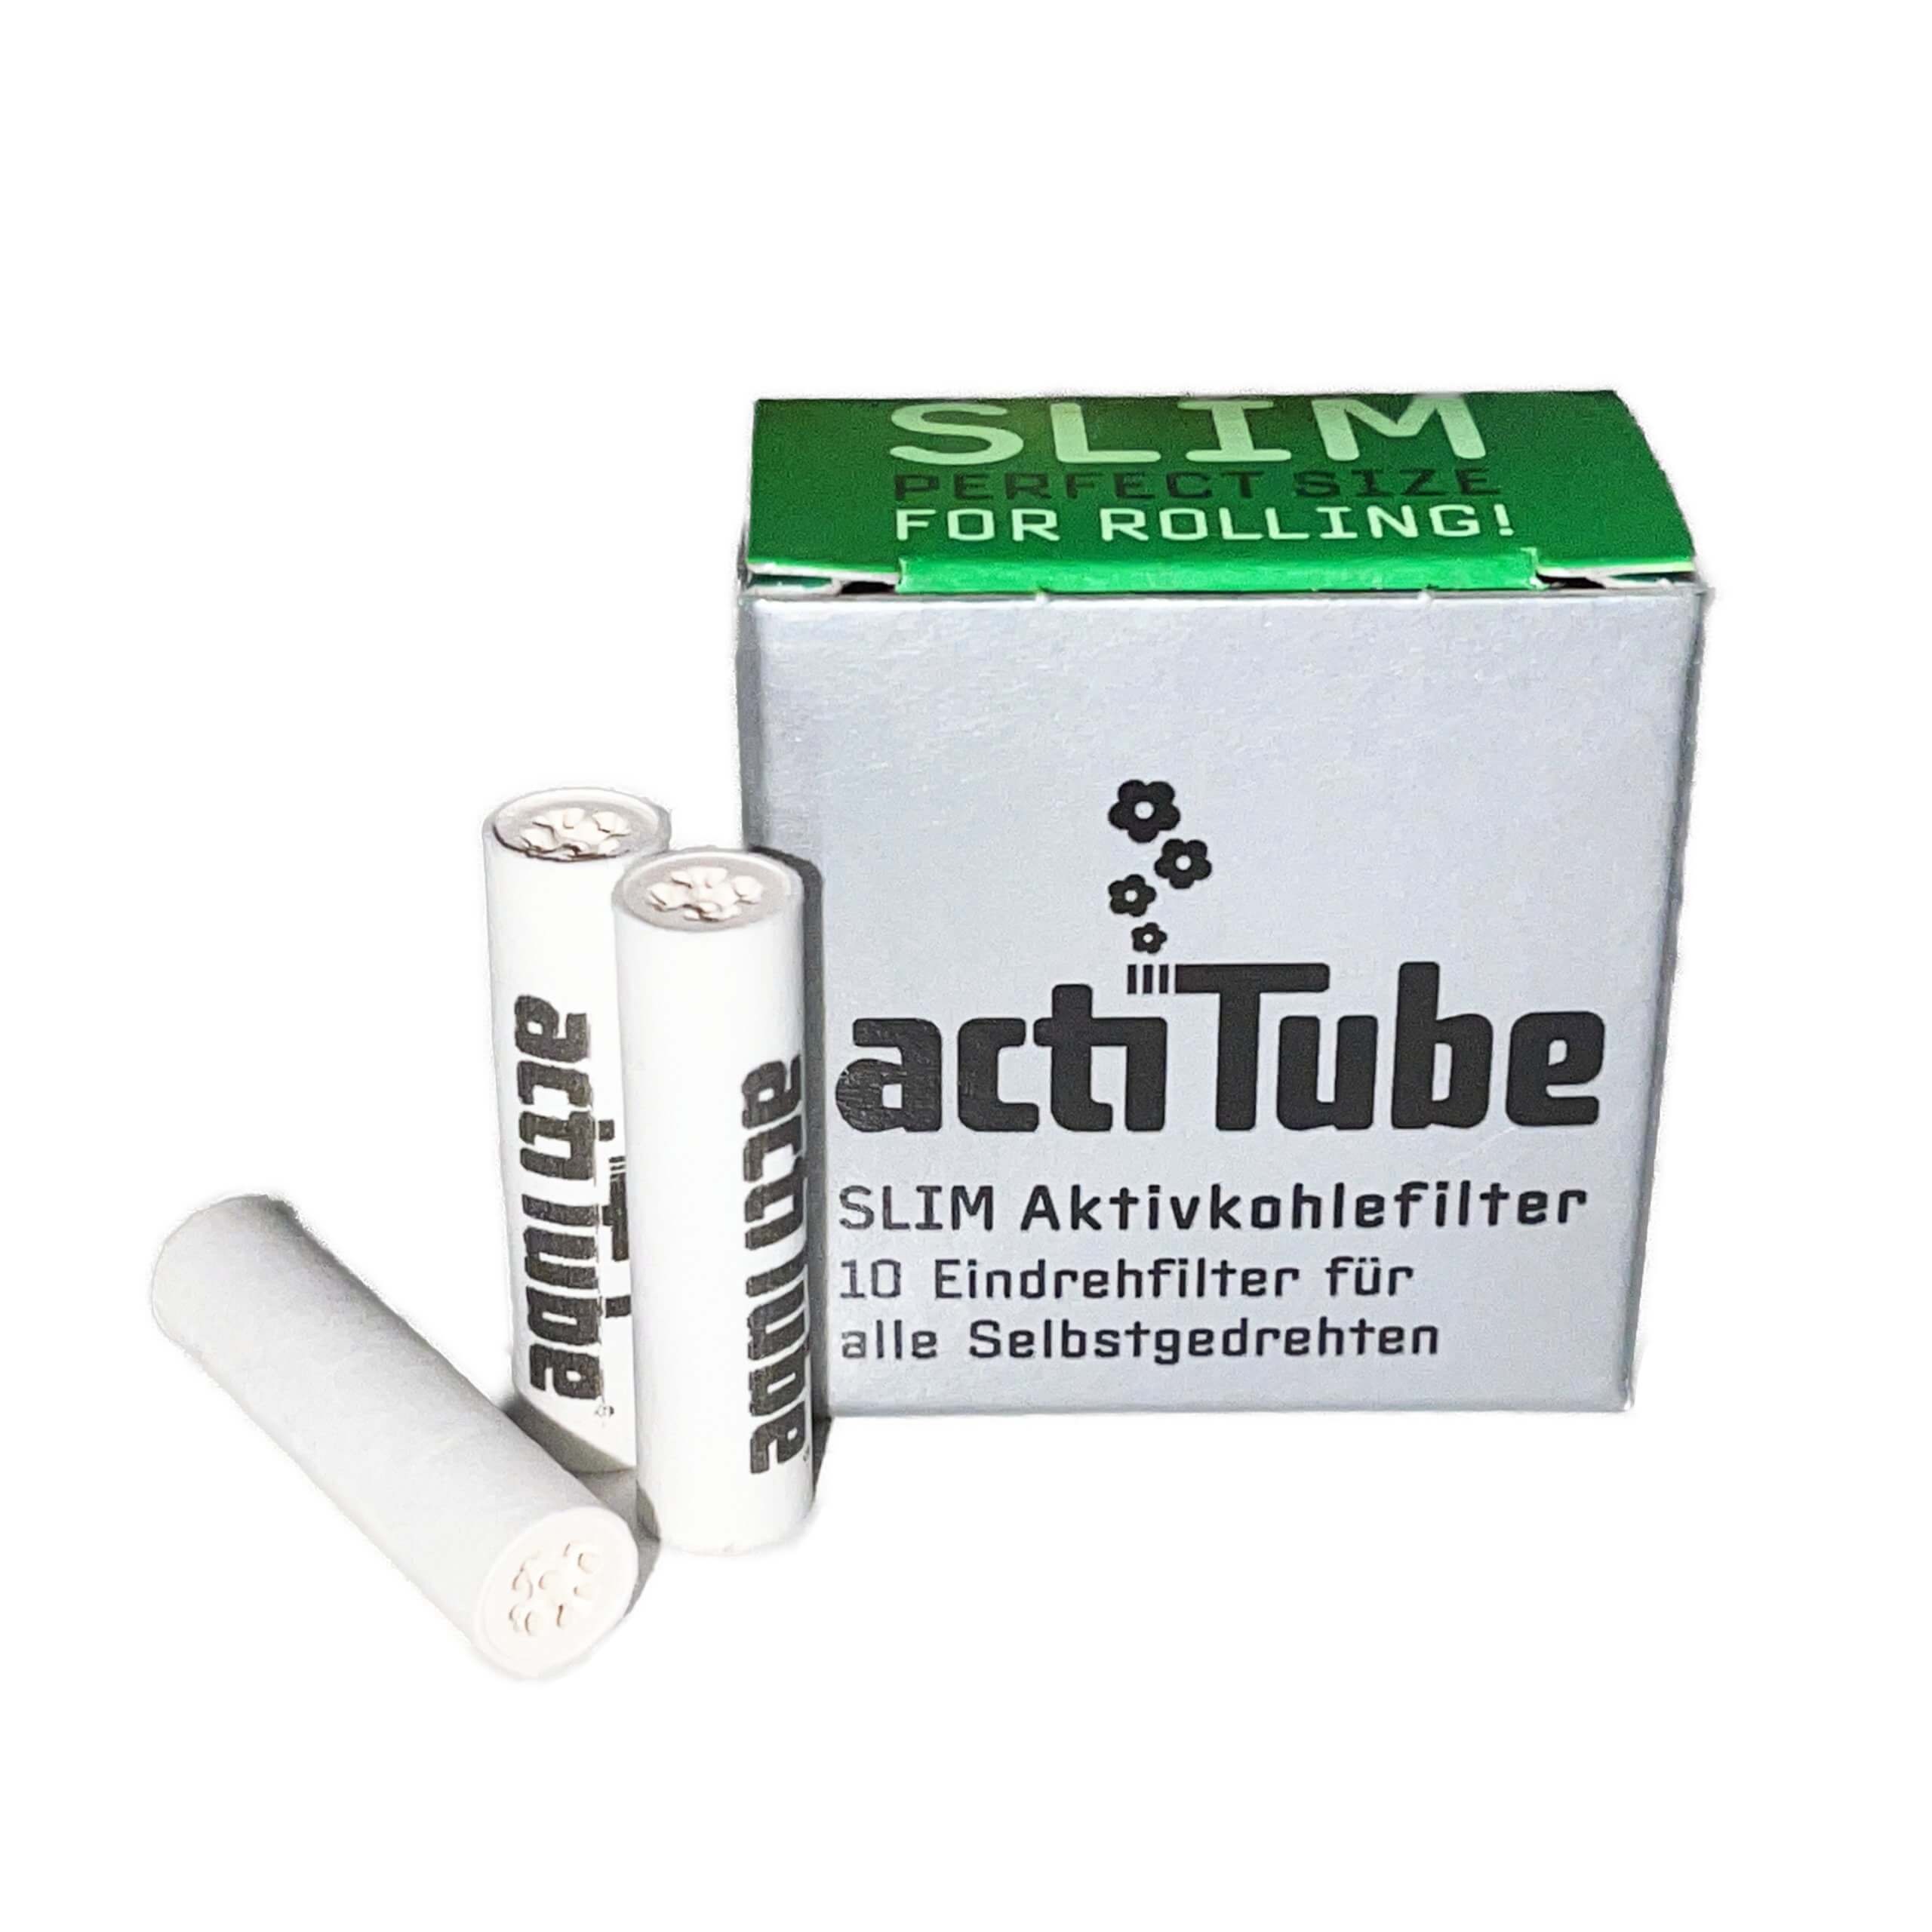 ActiTube 7mm SLIM Filter ( 10) - Ethnic World